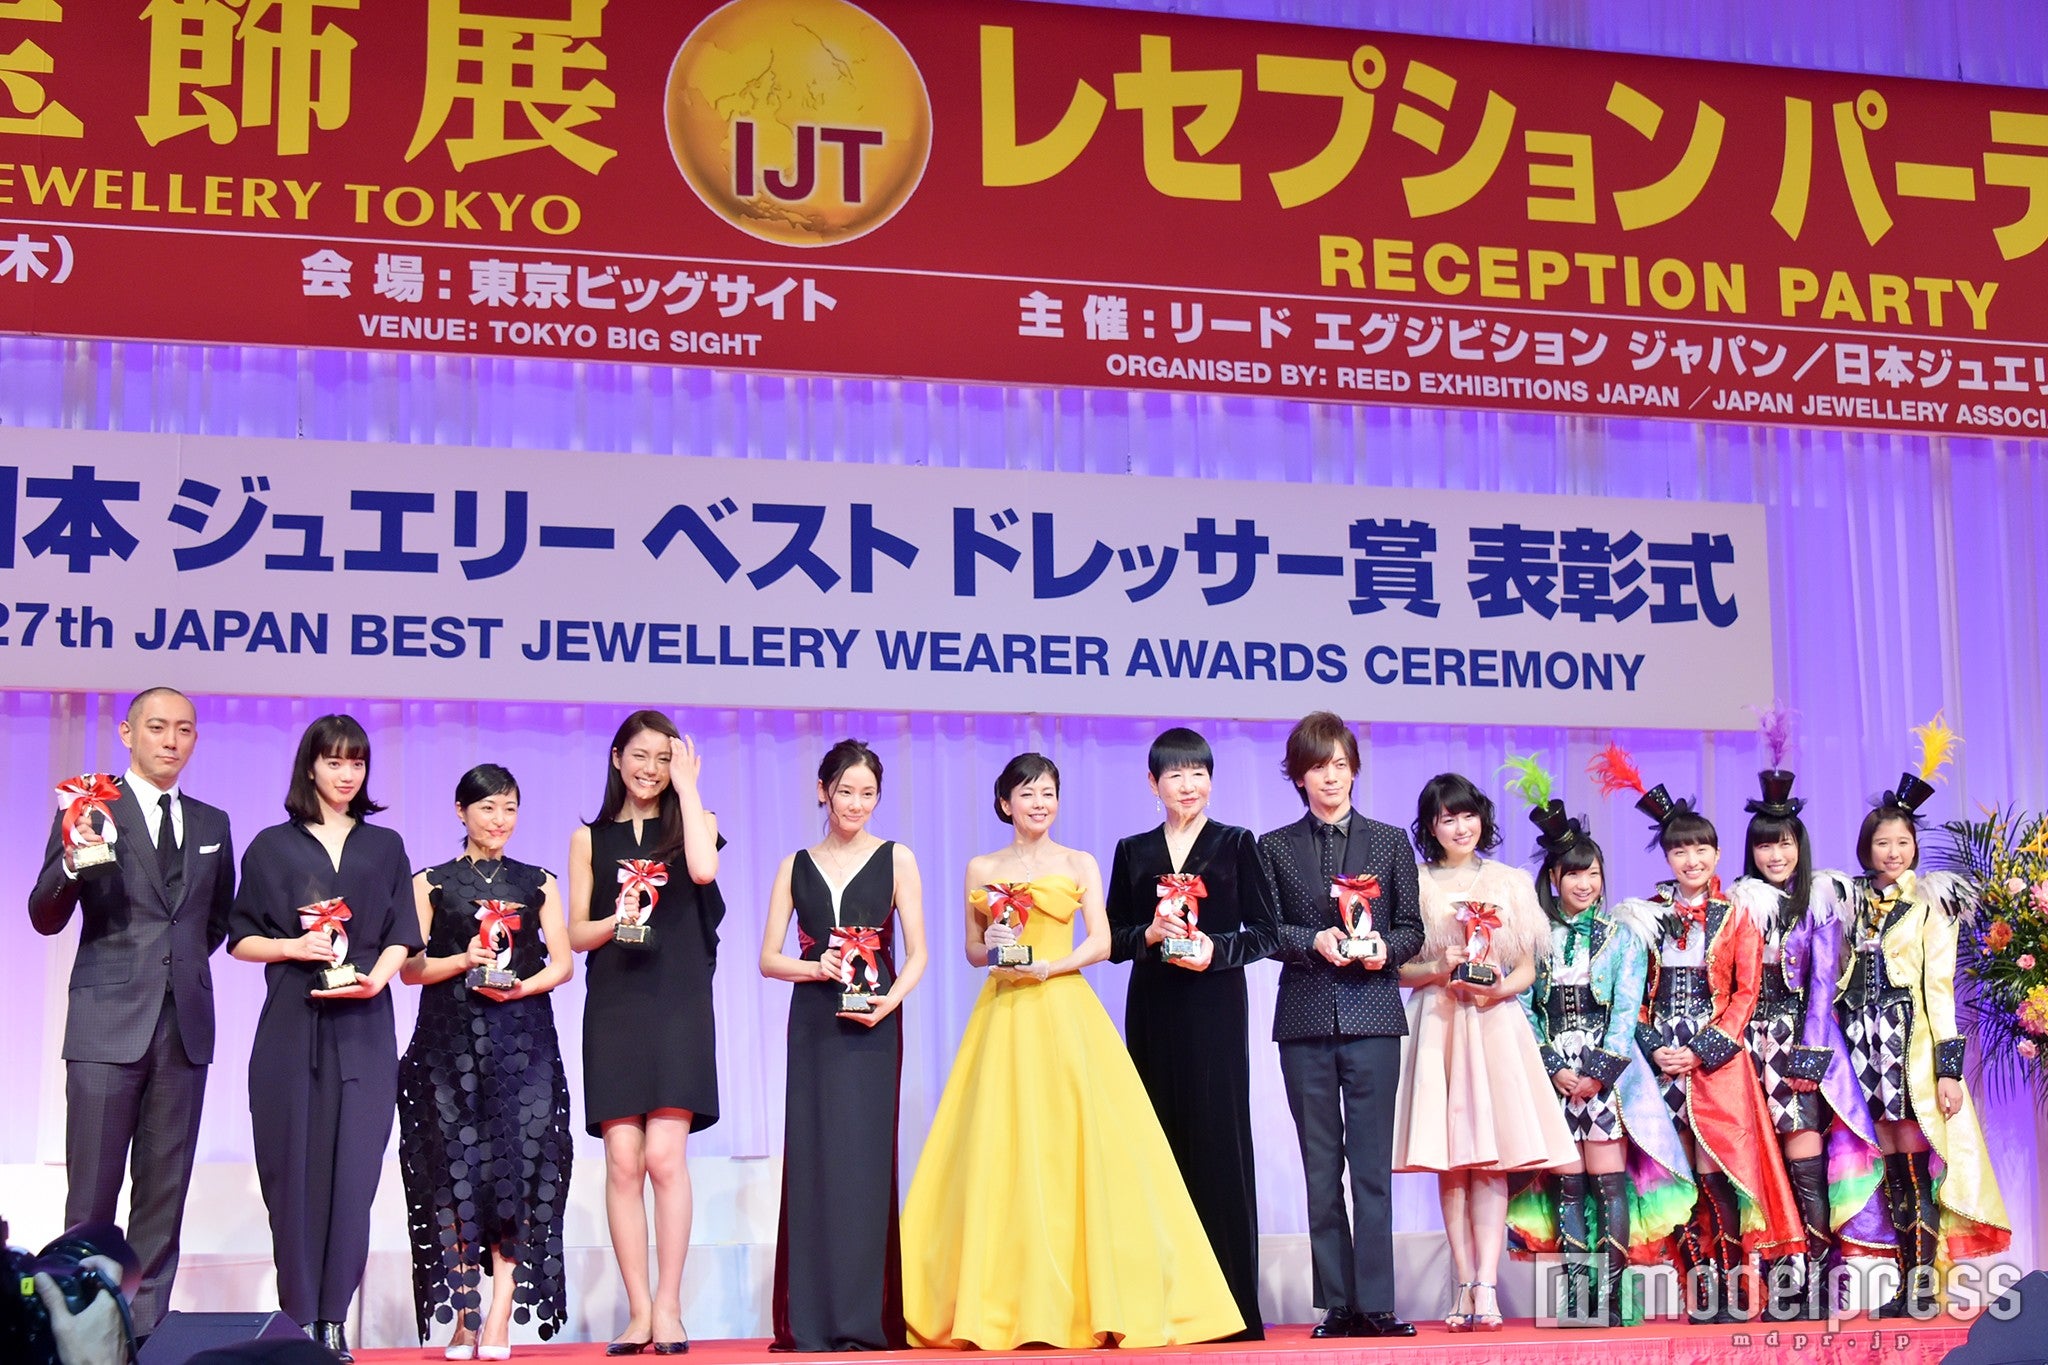 井上真央、小松菜奈、ももクロら豪華ドレスで集結「ジュエリーベストドレッサー賞」表彰式